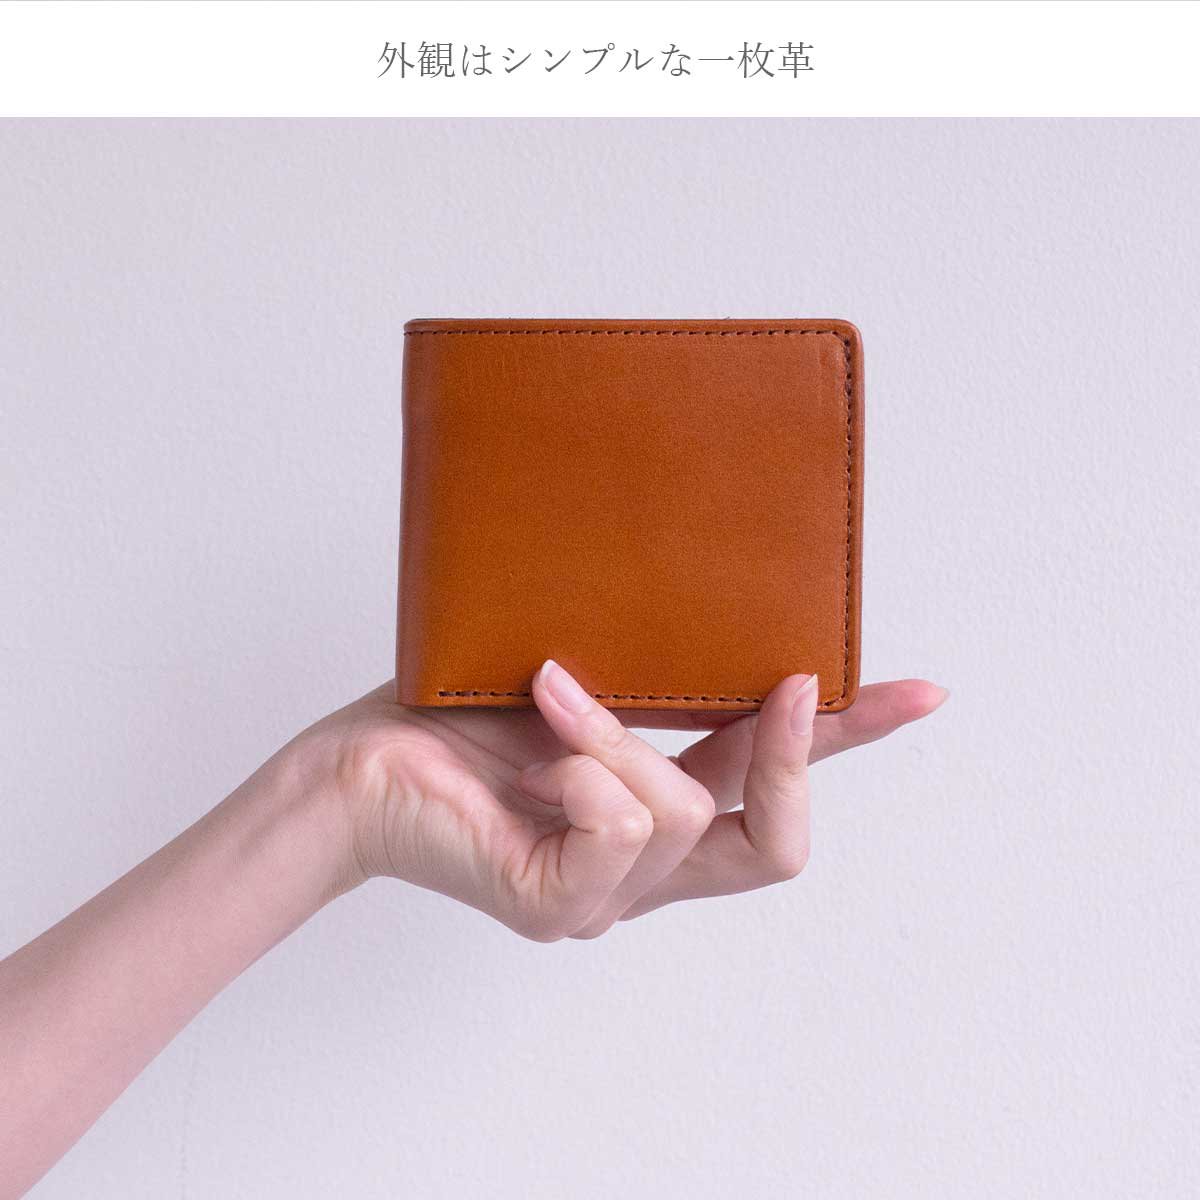 インナーのマルチカラーが美しい栃木レザー2つ折り財布 お手入れしながら長く使える 総革のカジュアル財布